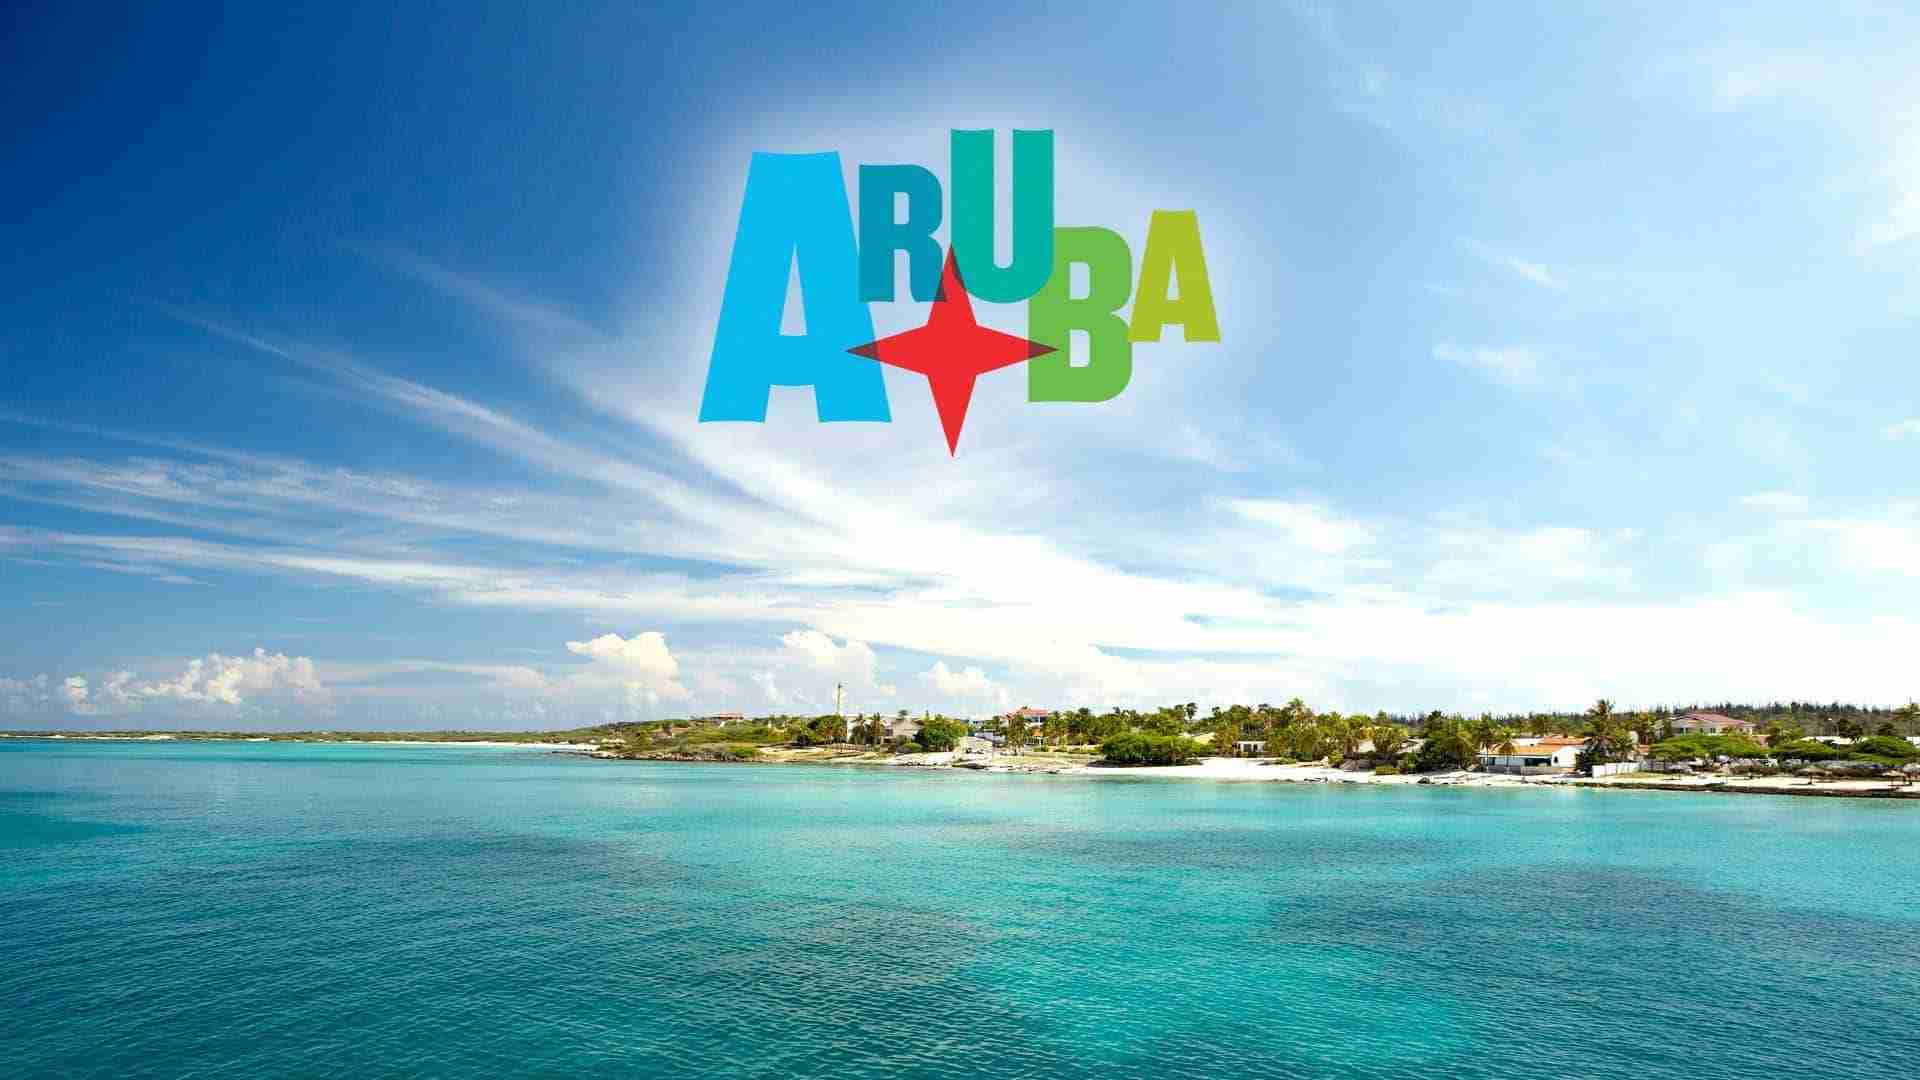 Ahhh Aruba - A Foodies Dream